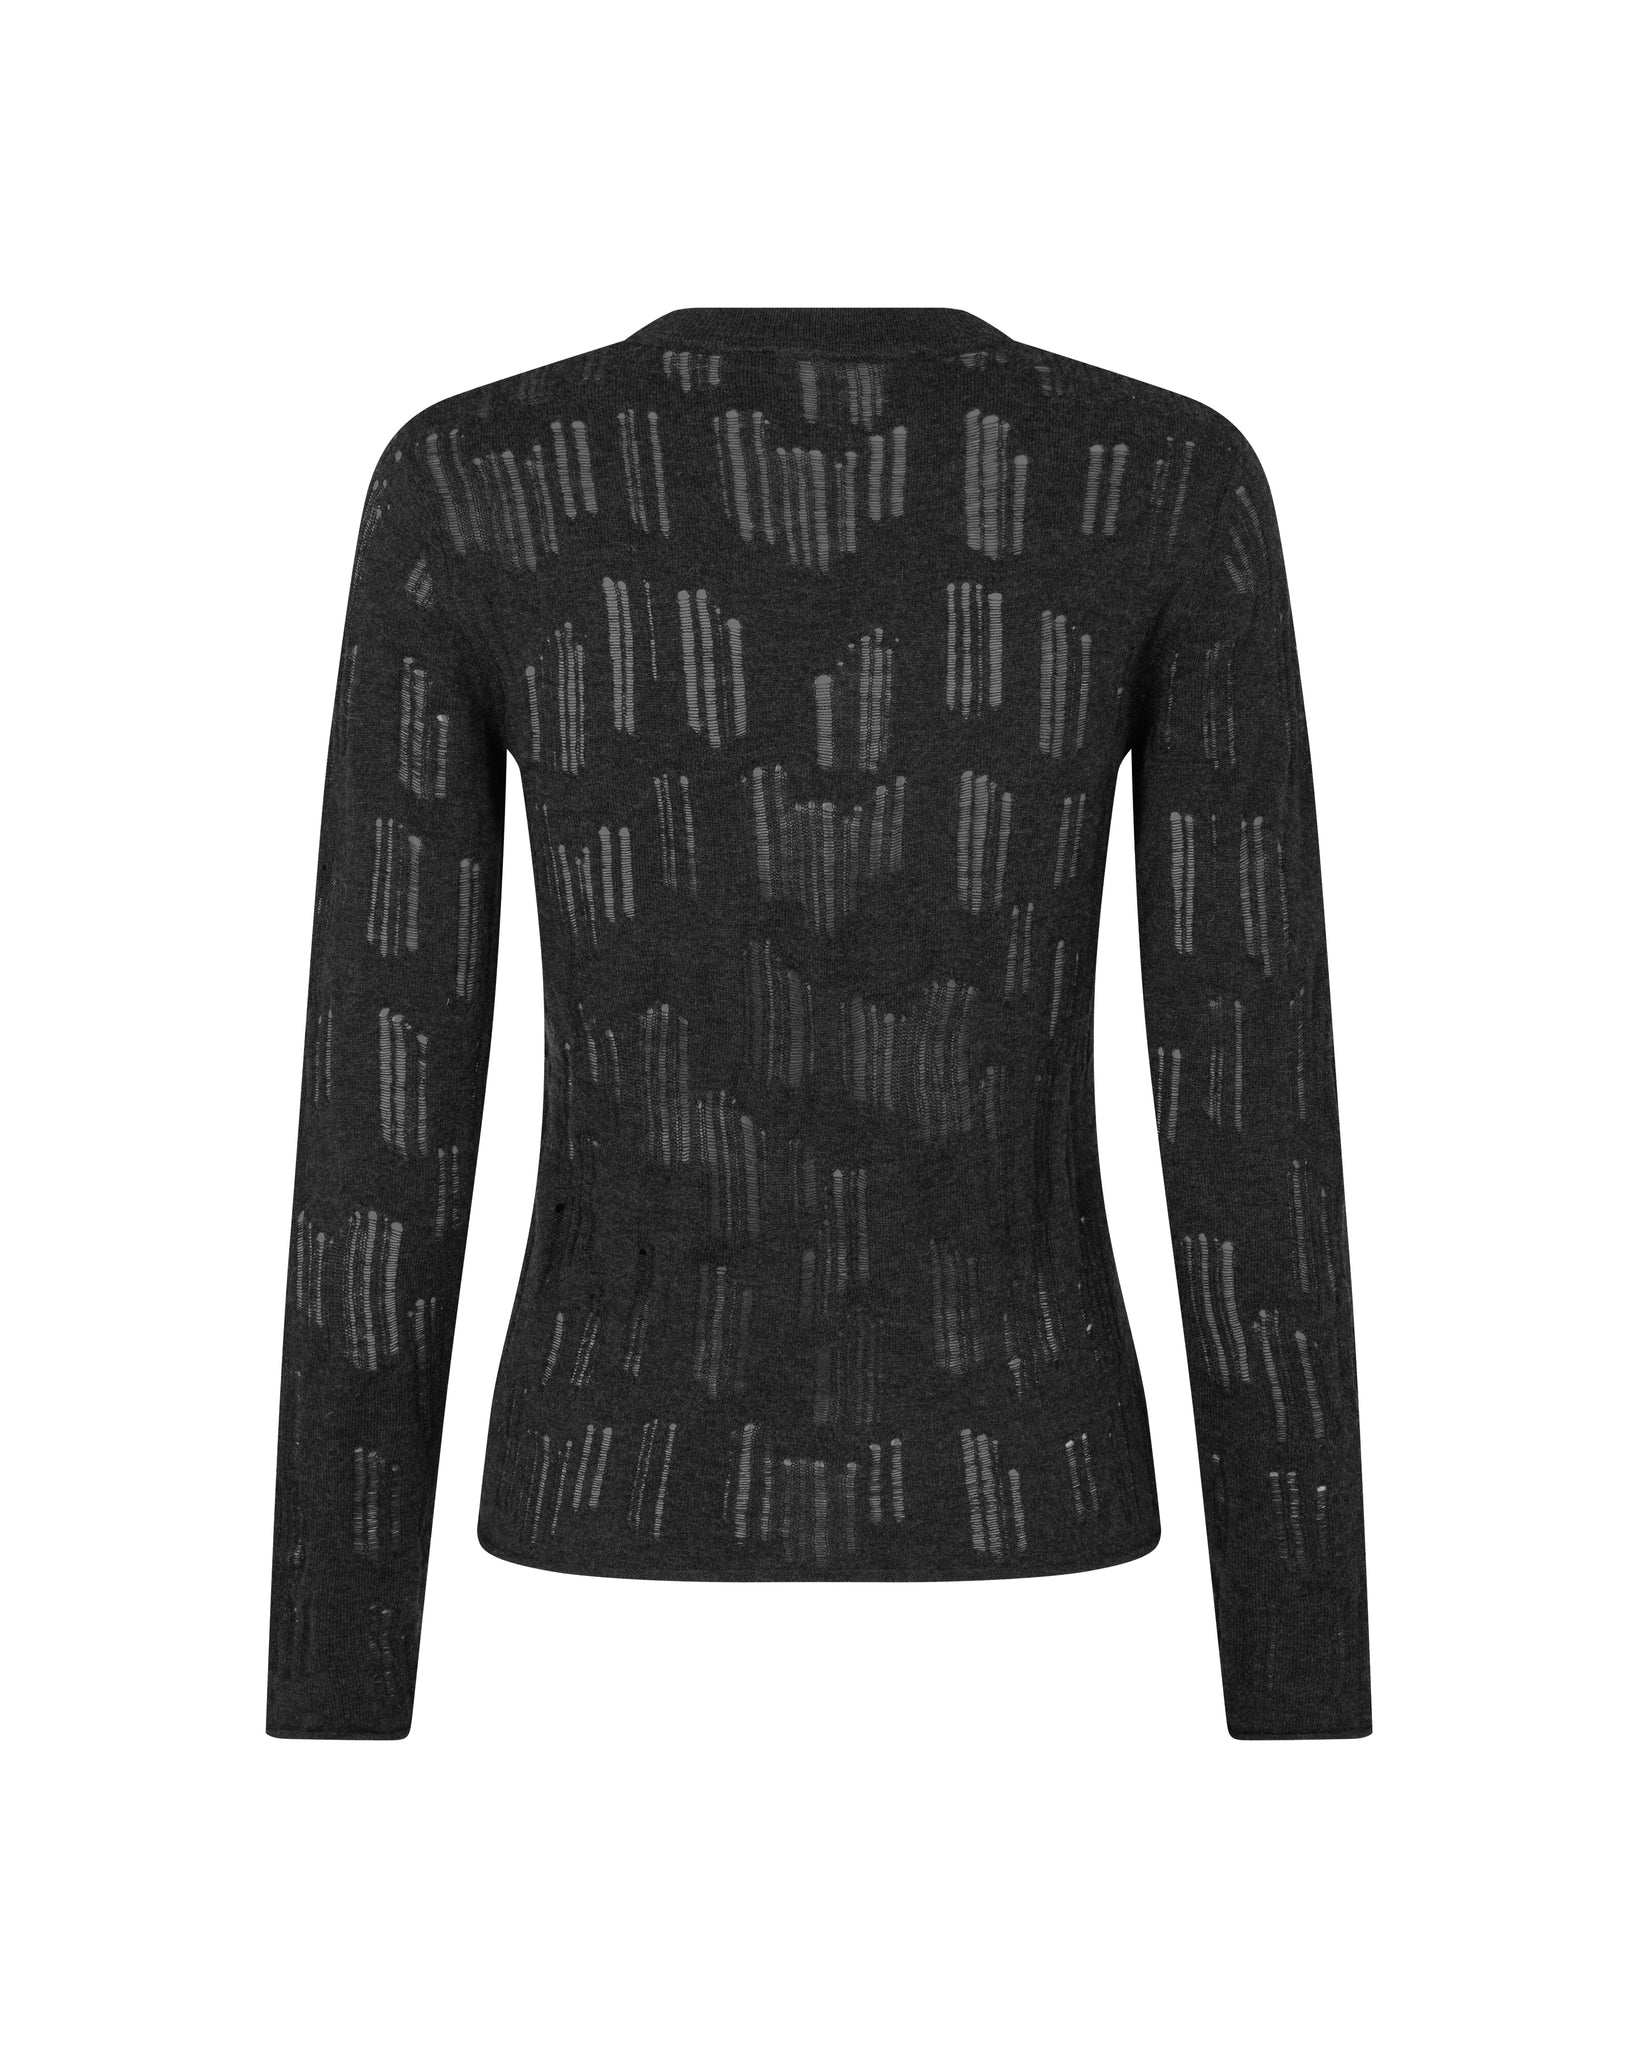 Louise Crew Neck sweater 14950 - Phantom